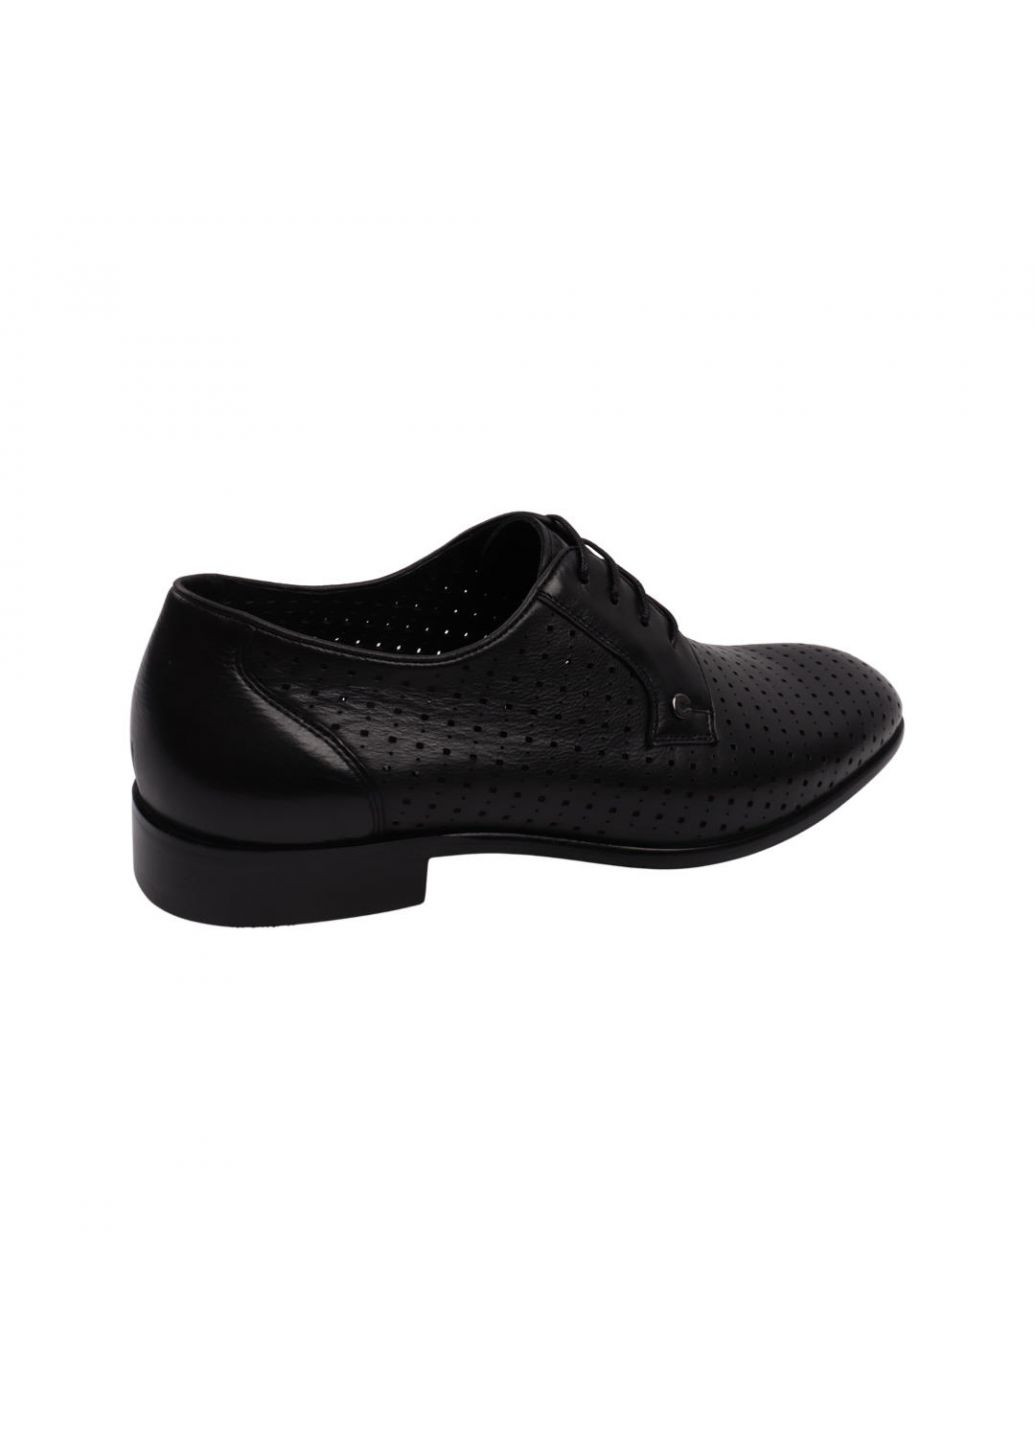 Черные туфли мужские черные натуральная кожа Clemento